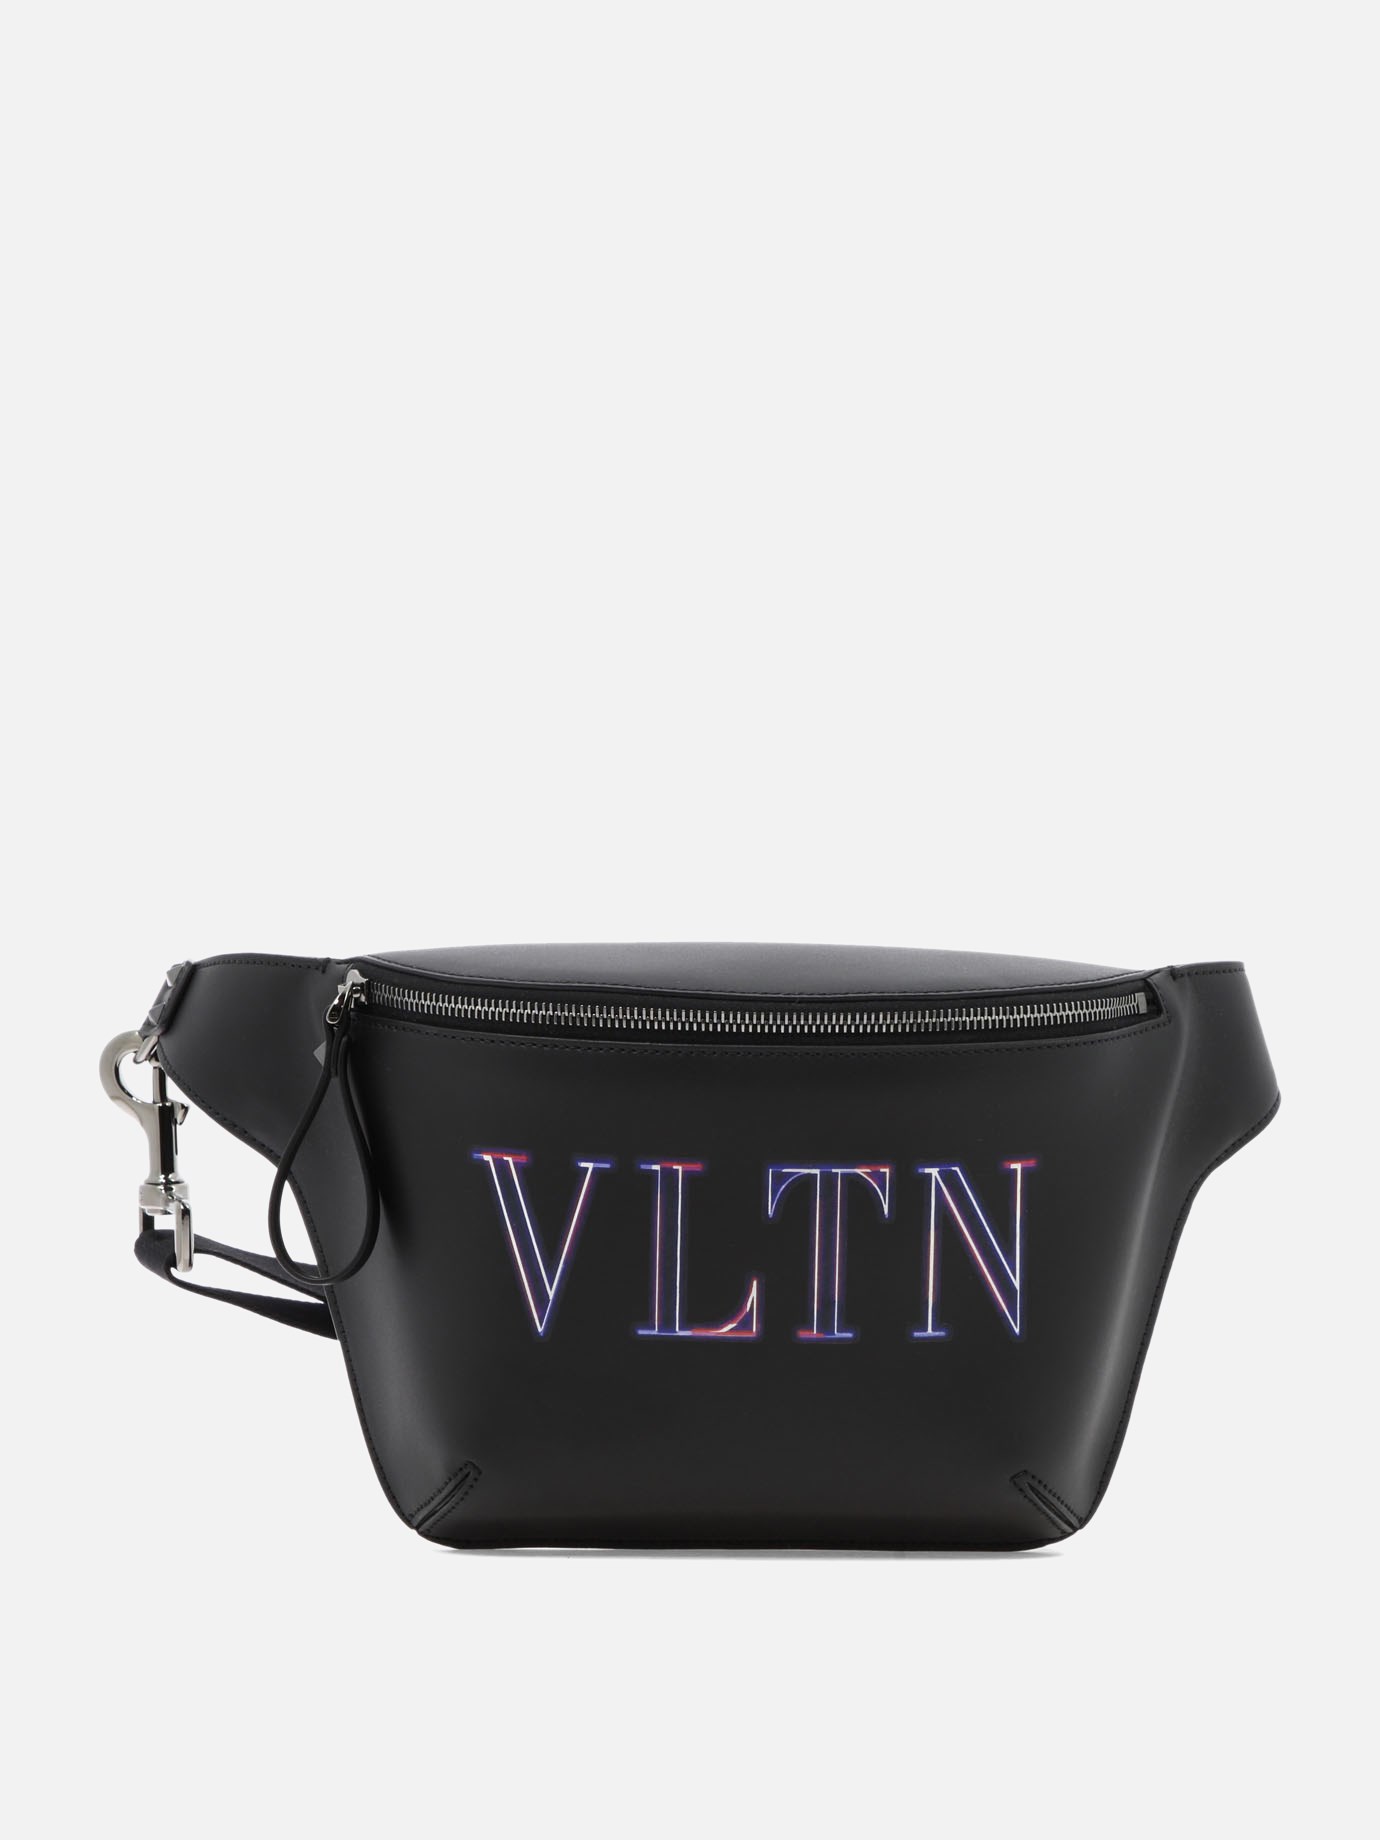  Neon VLTN  belt bagby Valentino Garavani - 3